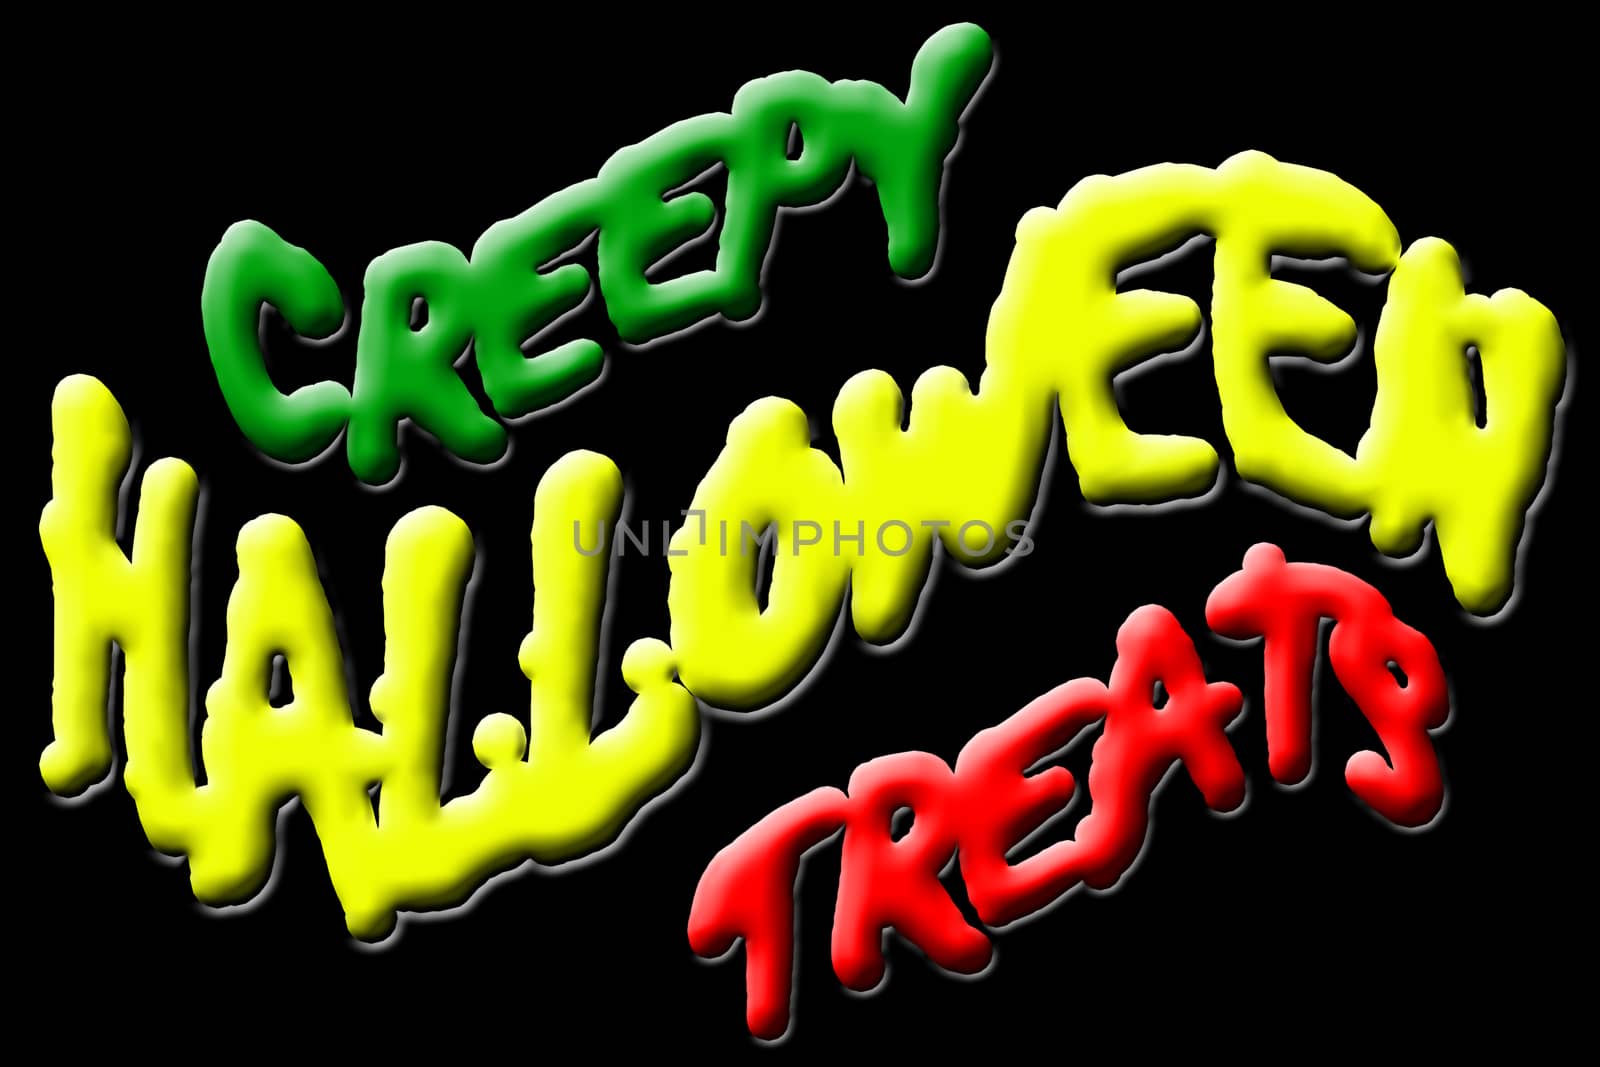 Creepy Halloween Treats by Nonneljohn